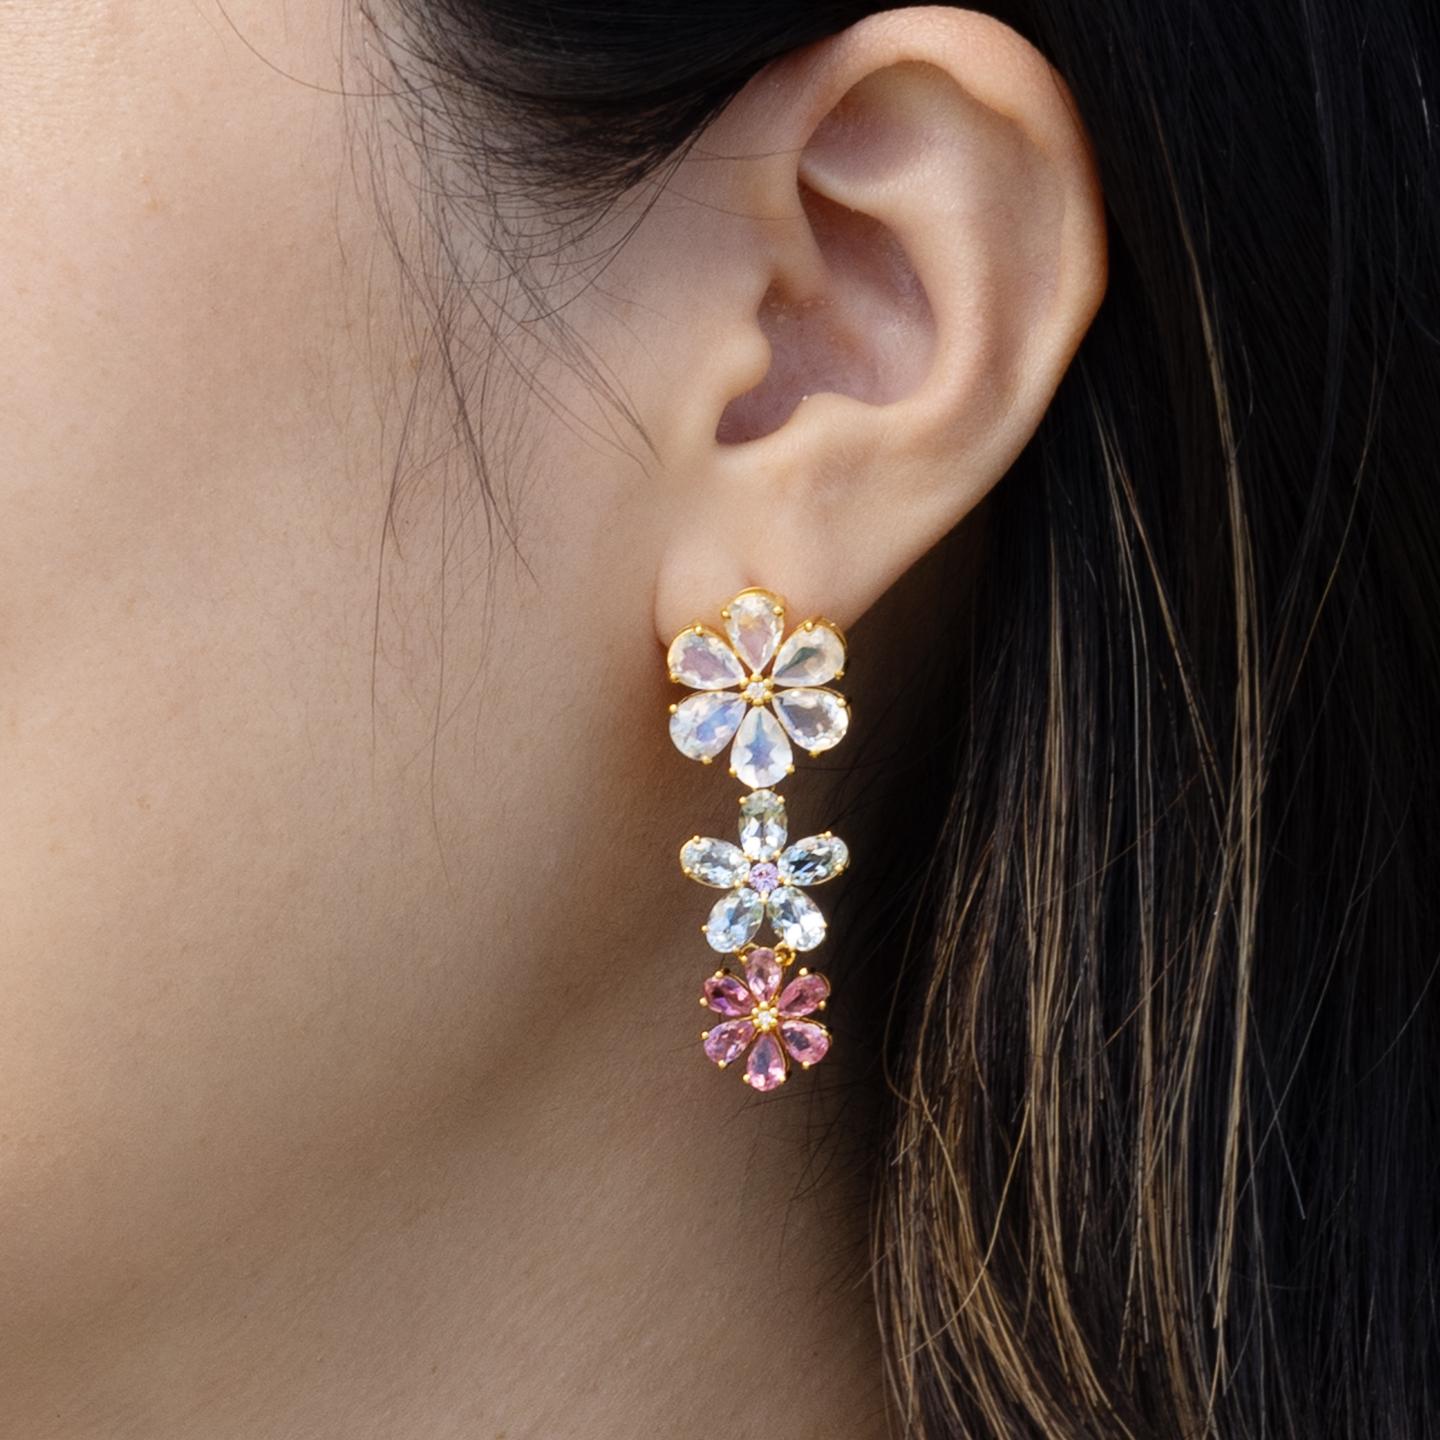 Les boucles d'oreilles Moonstone Aquamarine Pink Sapphire Diamond Blossom de Nina Zhou, méticuleusement réalisées en or jaune 14k. Ces boucles d'oreilles enchanteresses sont ornées d'une pierre de lune séduisante au sommet, réputée pour son éclat